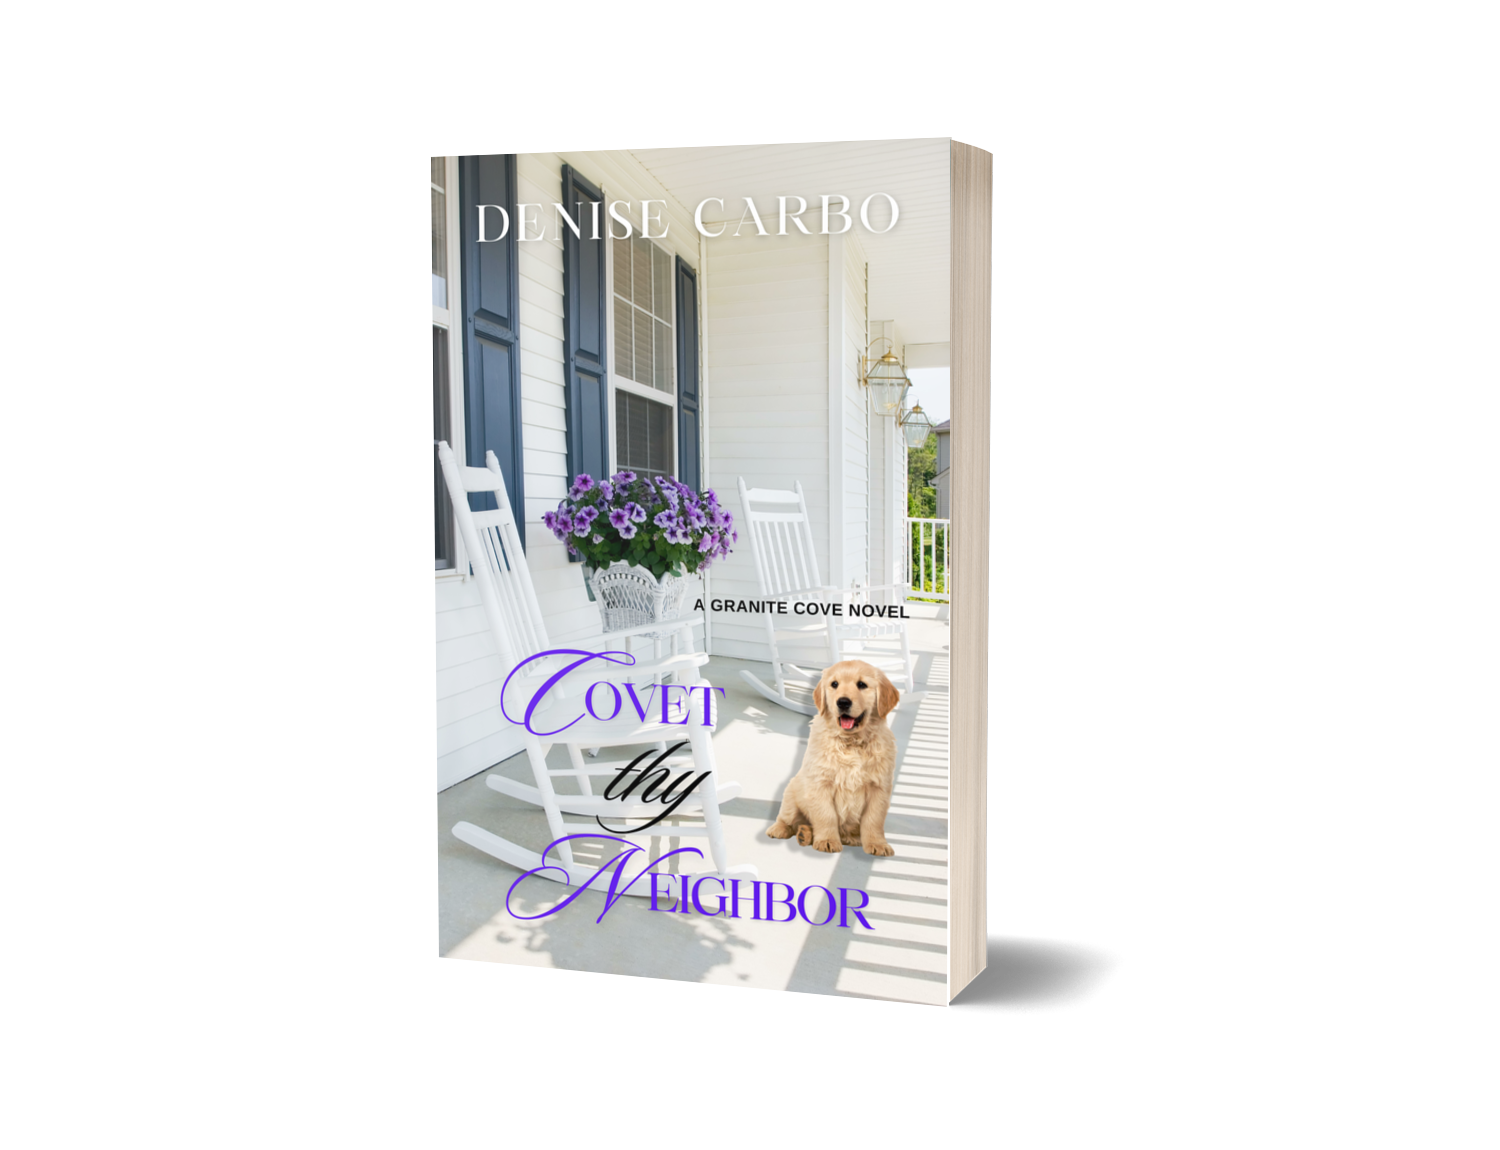 Covet thy Neighbor paperback cover